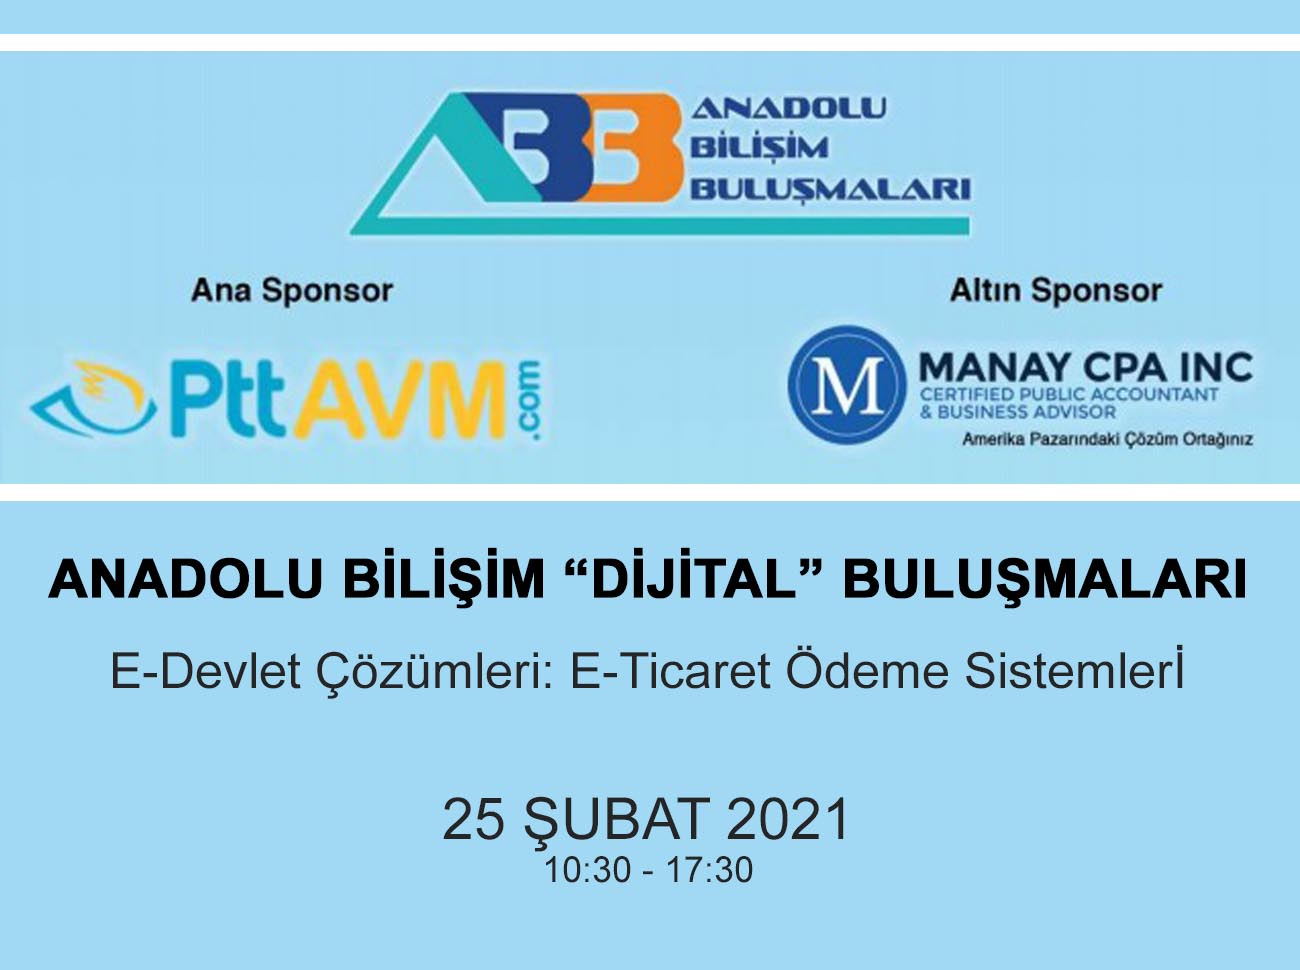 Anadolu Bilişim Dijital Buluşmaları 25 Şubat’ta